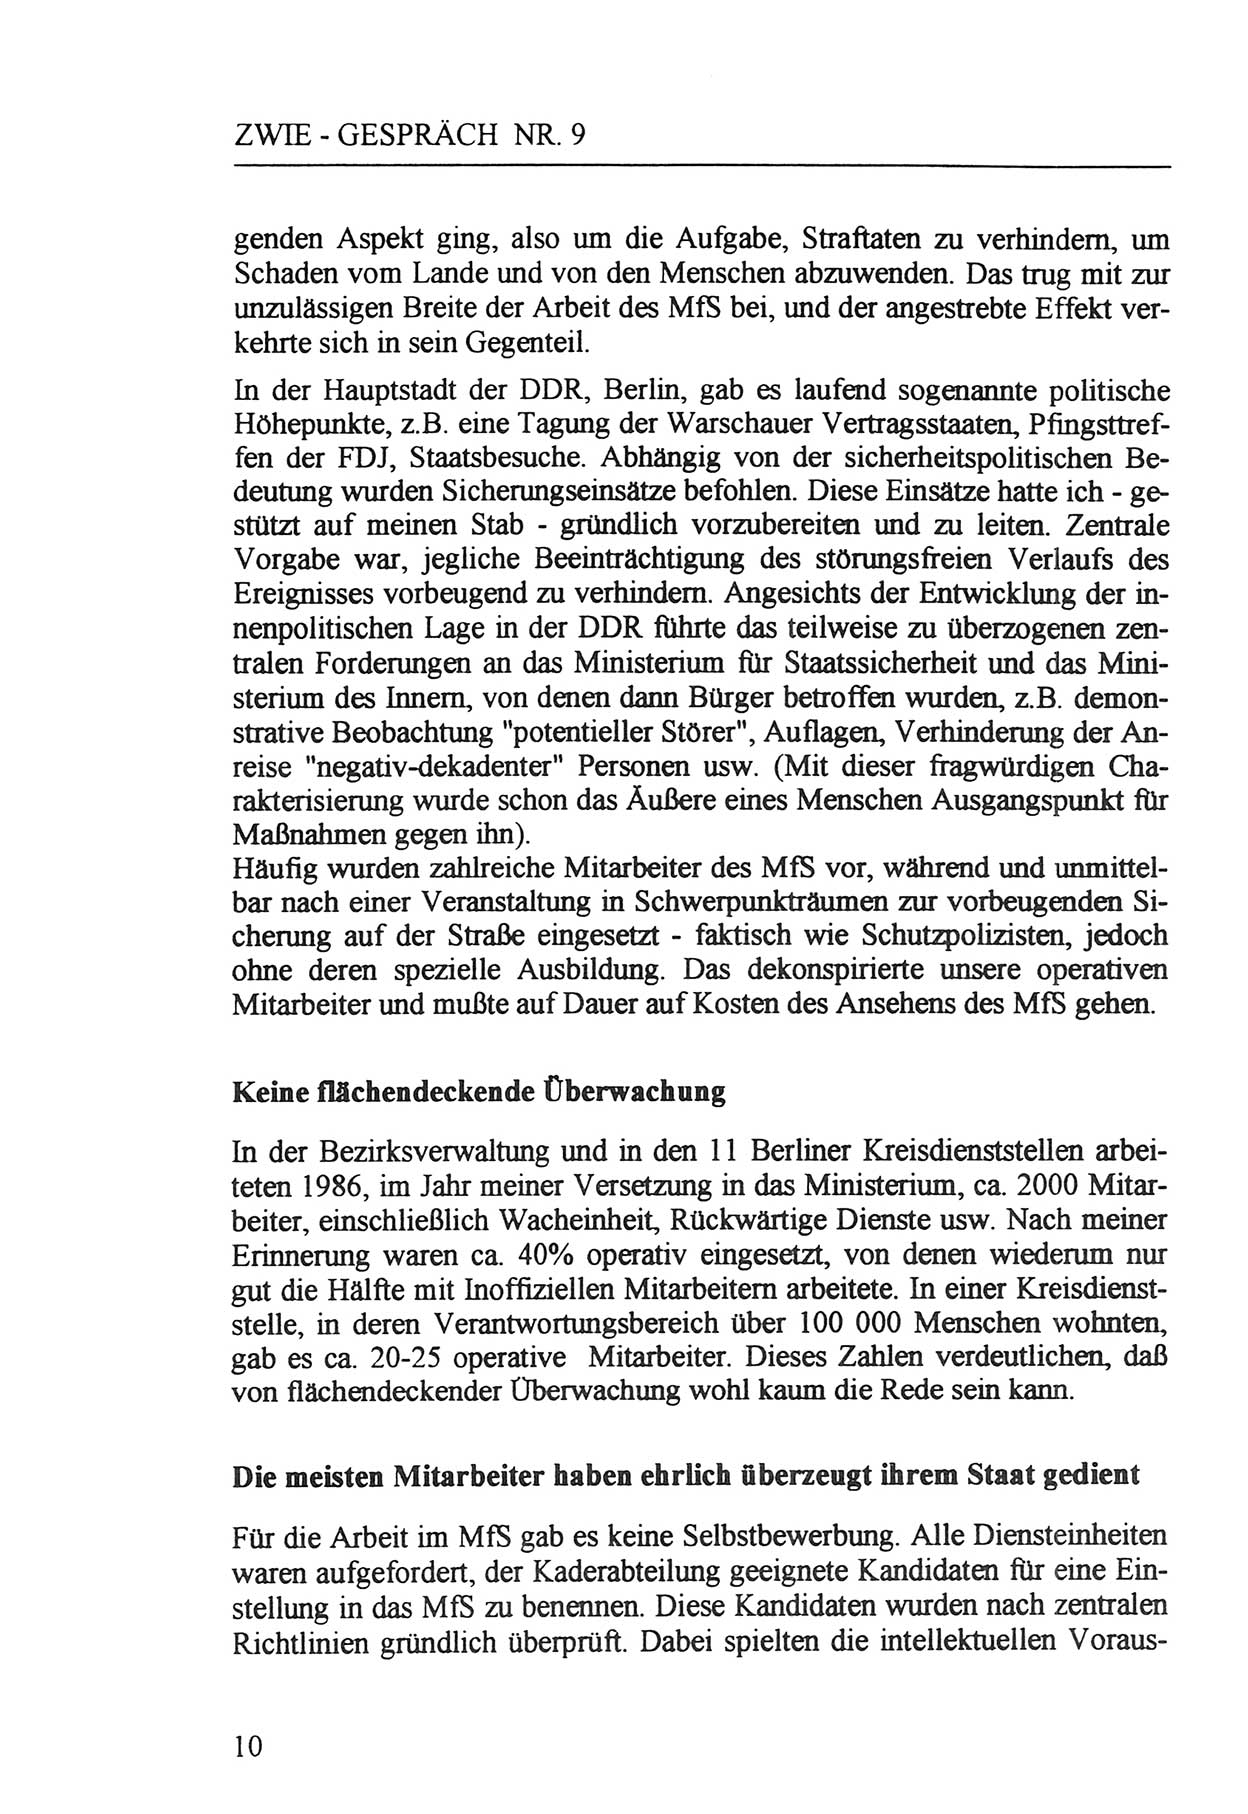 Zwie-Gespräch, Beiträge zur Aufarbeitung der Staatssicherheits-Vergangenheit [Deutsche Demokratische Republik (DDR)], Ausgabe Nr. 9, Berlin 1992, Seite 10 (Zwie-Gespr. Ausg. 9 1992, S. 10)